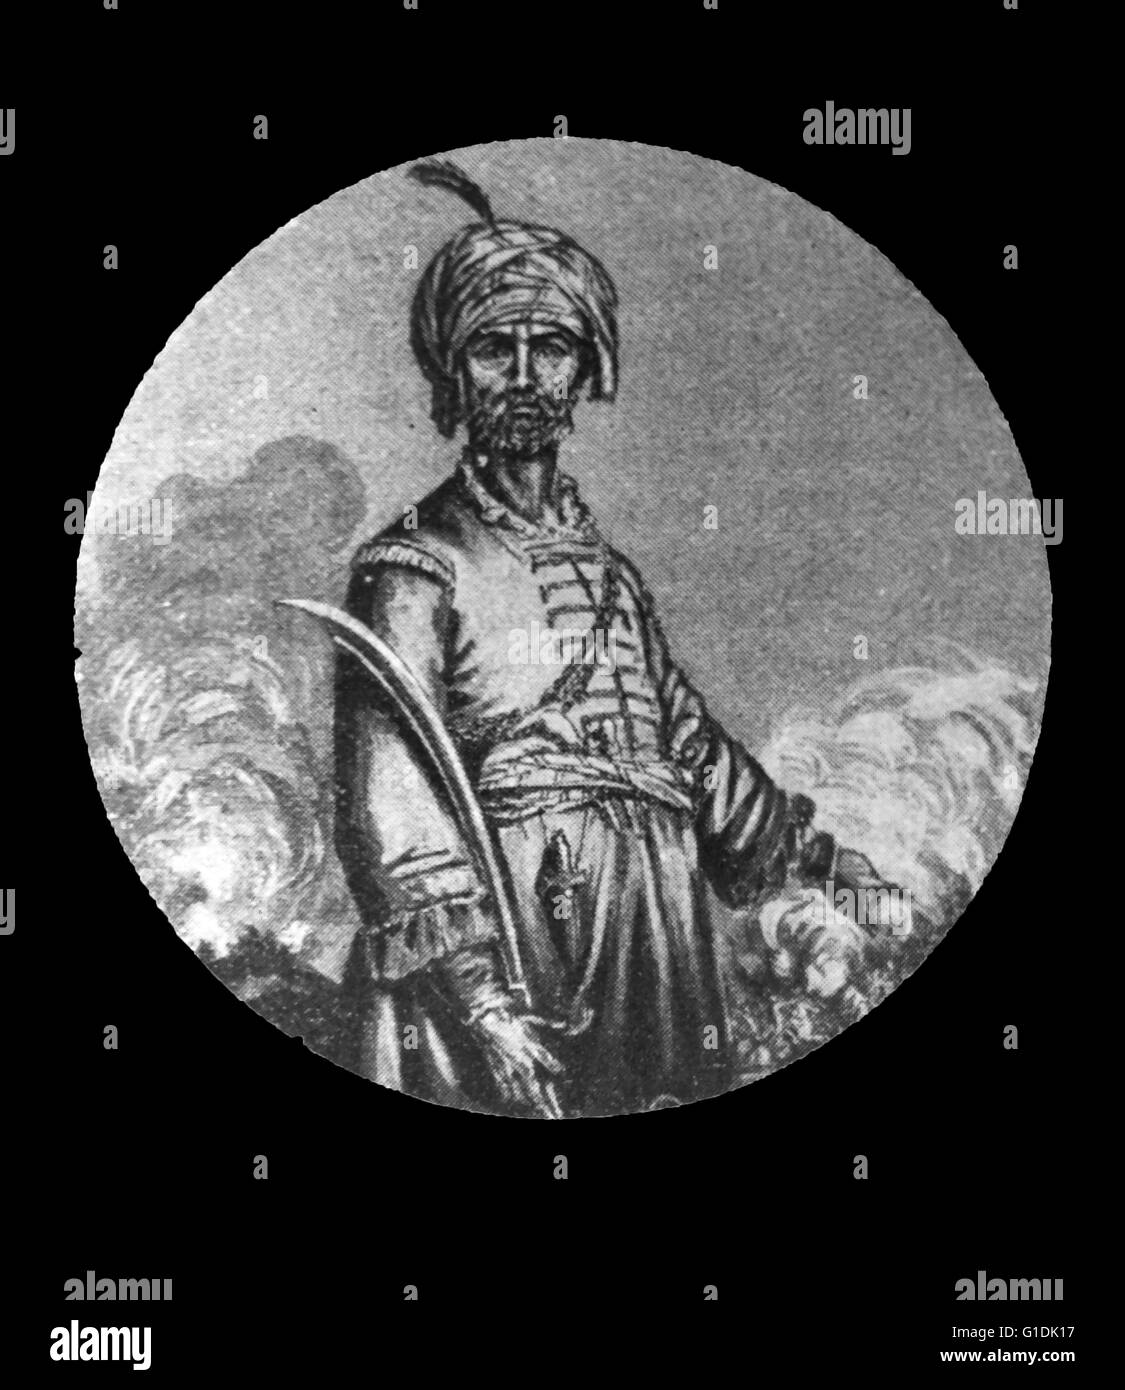 Illustriertes Porträt von Hyder Ali Khan, Haidar? l? (1721 - 1782) He Sultan und de-facto-Herrscher über das Königreich von Mysore im Süden Indiens. Vom 18. Jahrhundert Stockfoto